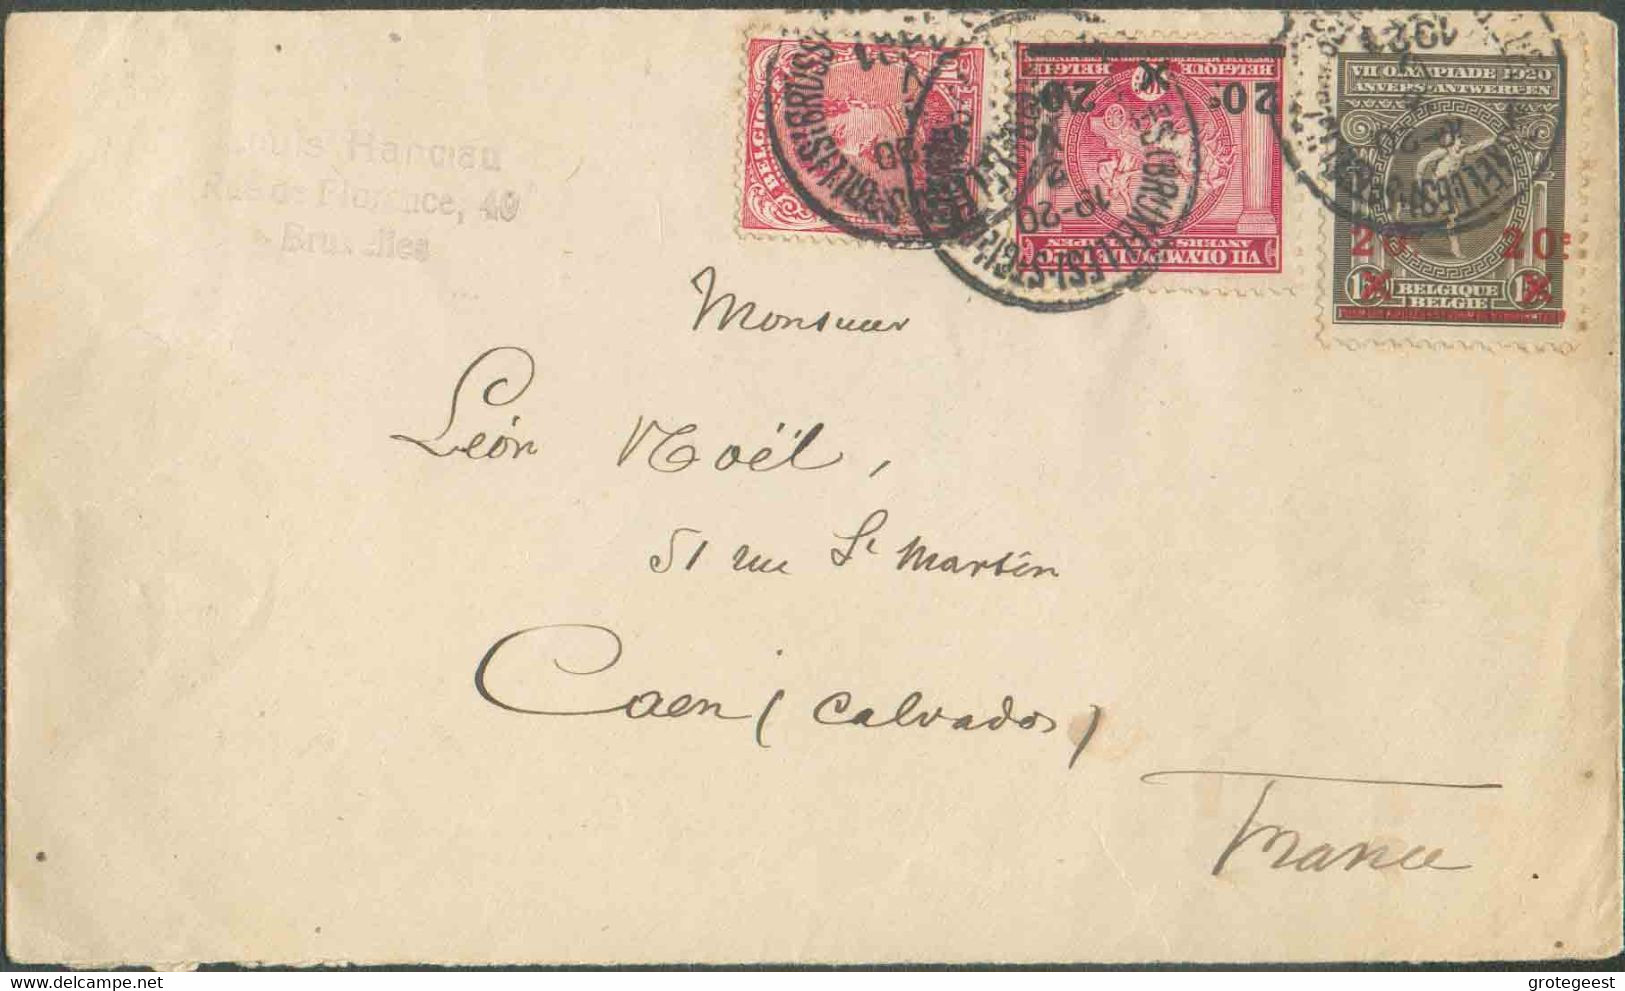 BELGIUM N°138-185/6 - Affr. Combiné à 50 Centimes Obl. Sc St-GILLES (BRUXELLES) s/L. Du 2-V-1921 Vers Caen. - TB - 17309 - Ete 1920: Anvers